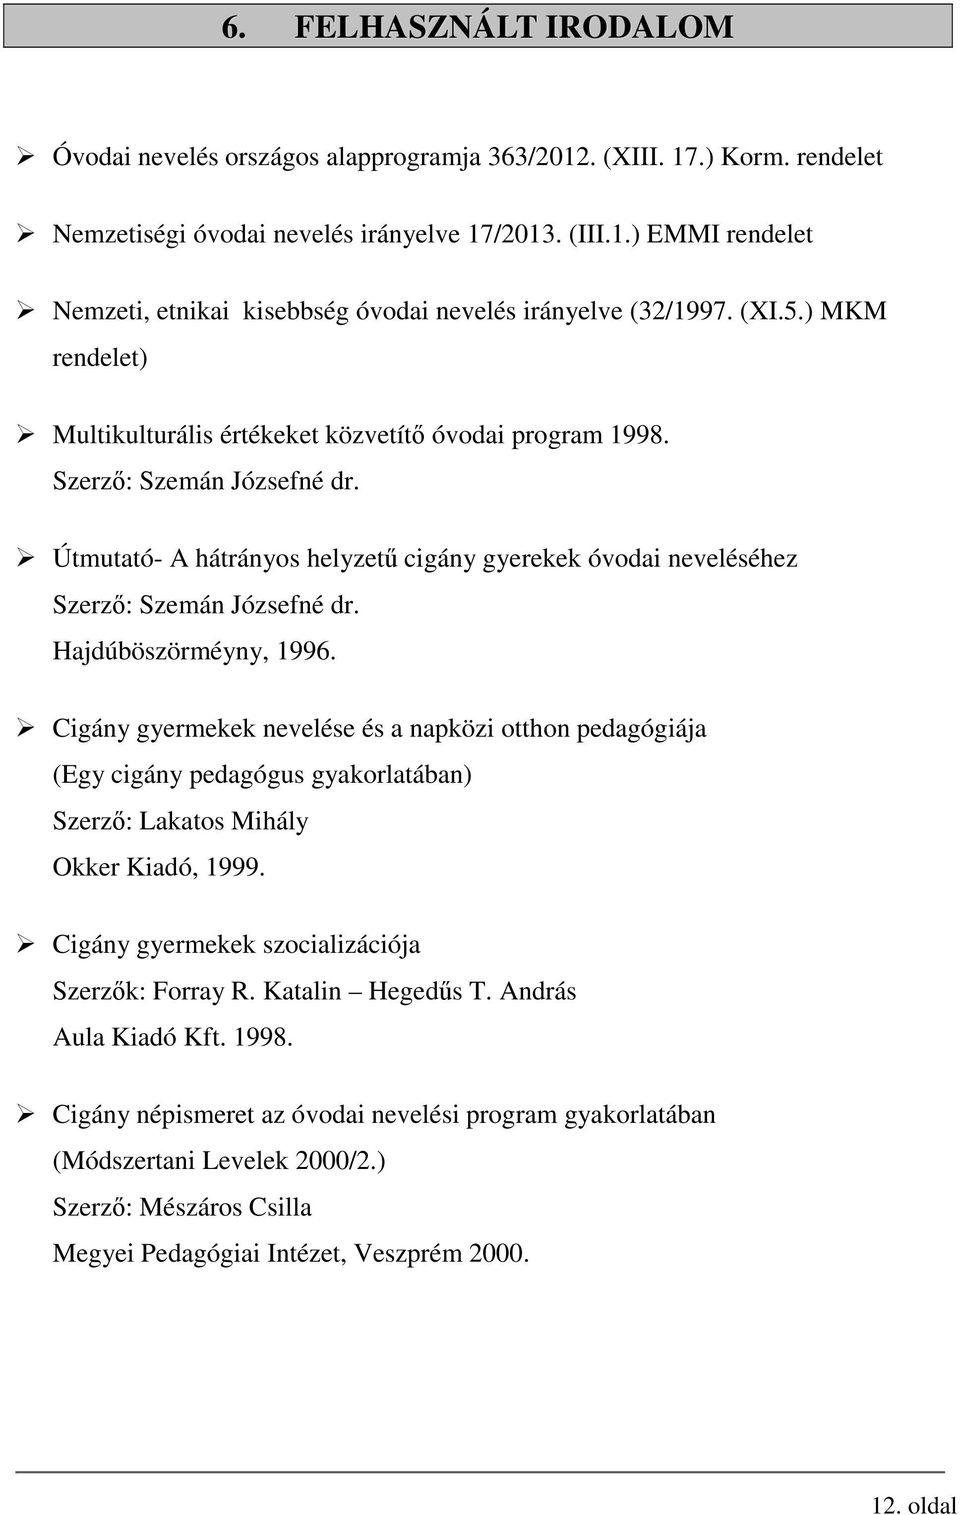 Hajdúböszörméyny, 1996. Cigány gyermekek nevelése és a napközi otthon pedagógiája (Egy cigány pedagógus gyakorlatában) Szerző: Lakatos Mihály Okker Kiadó, 1999.